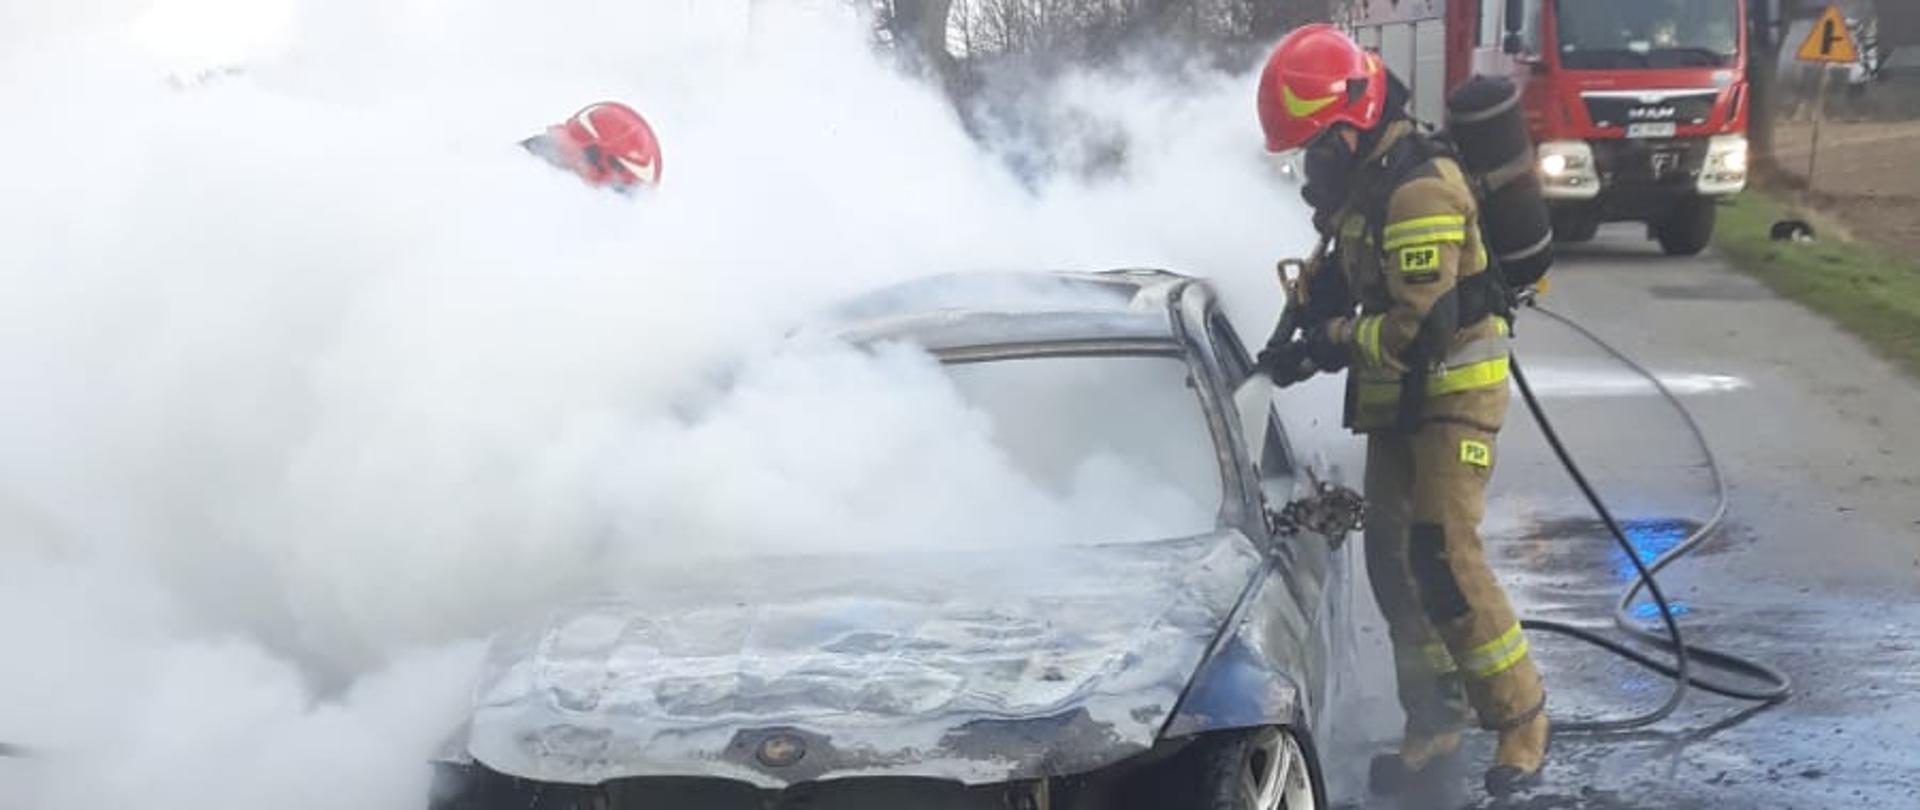 Strażacy gaszą palący się samochód w miejscowości Łaziska